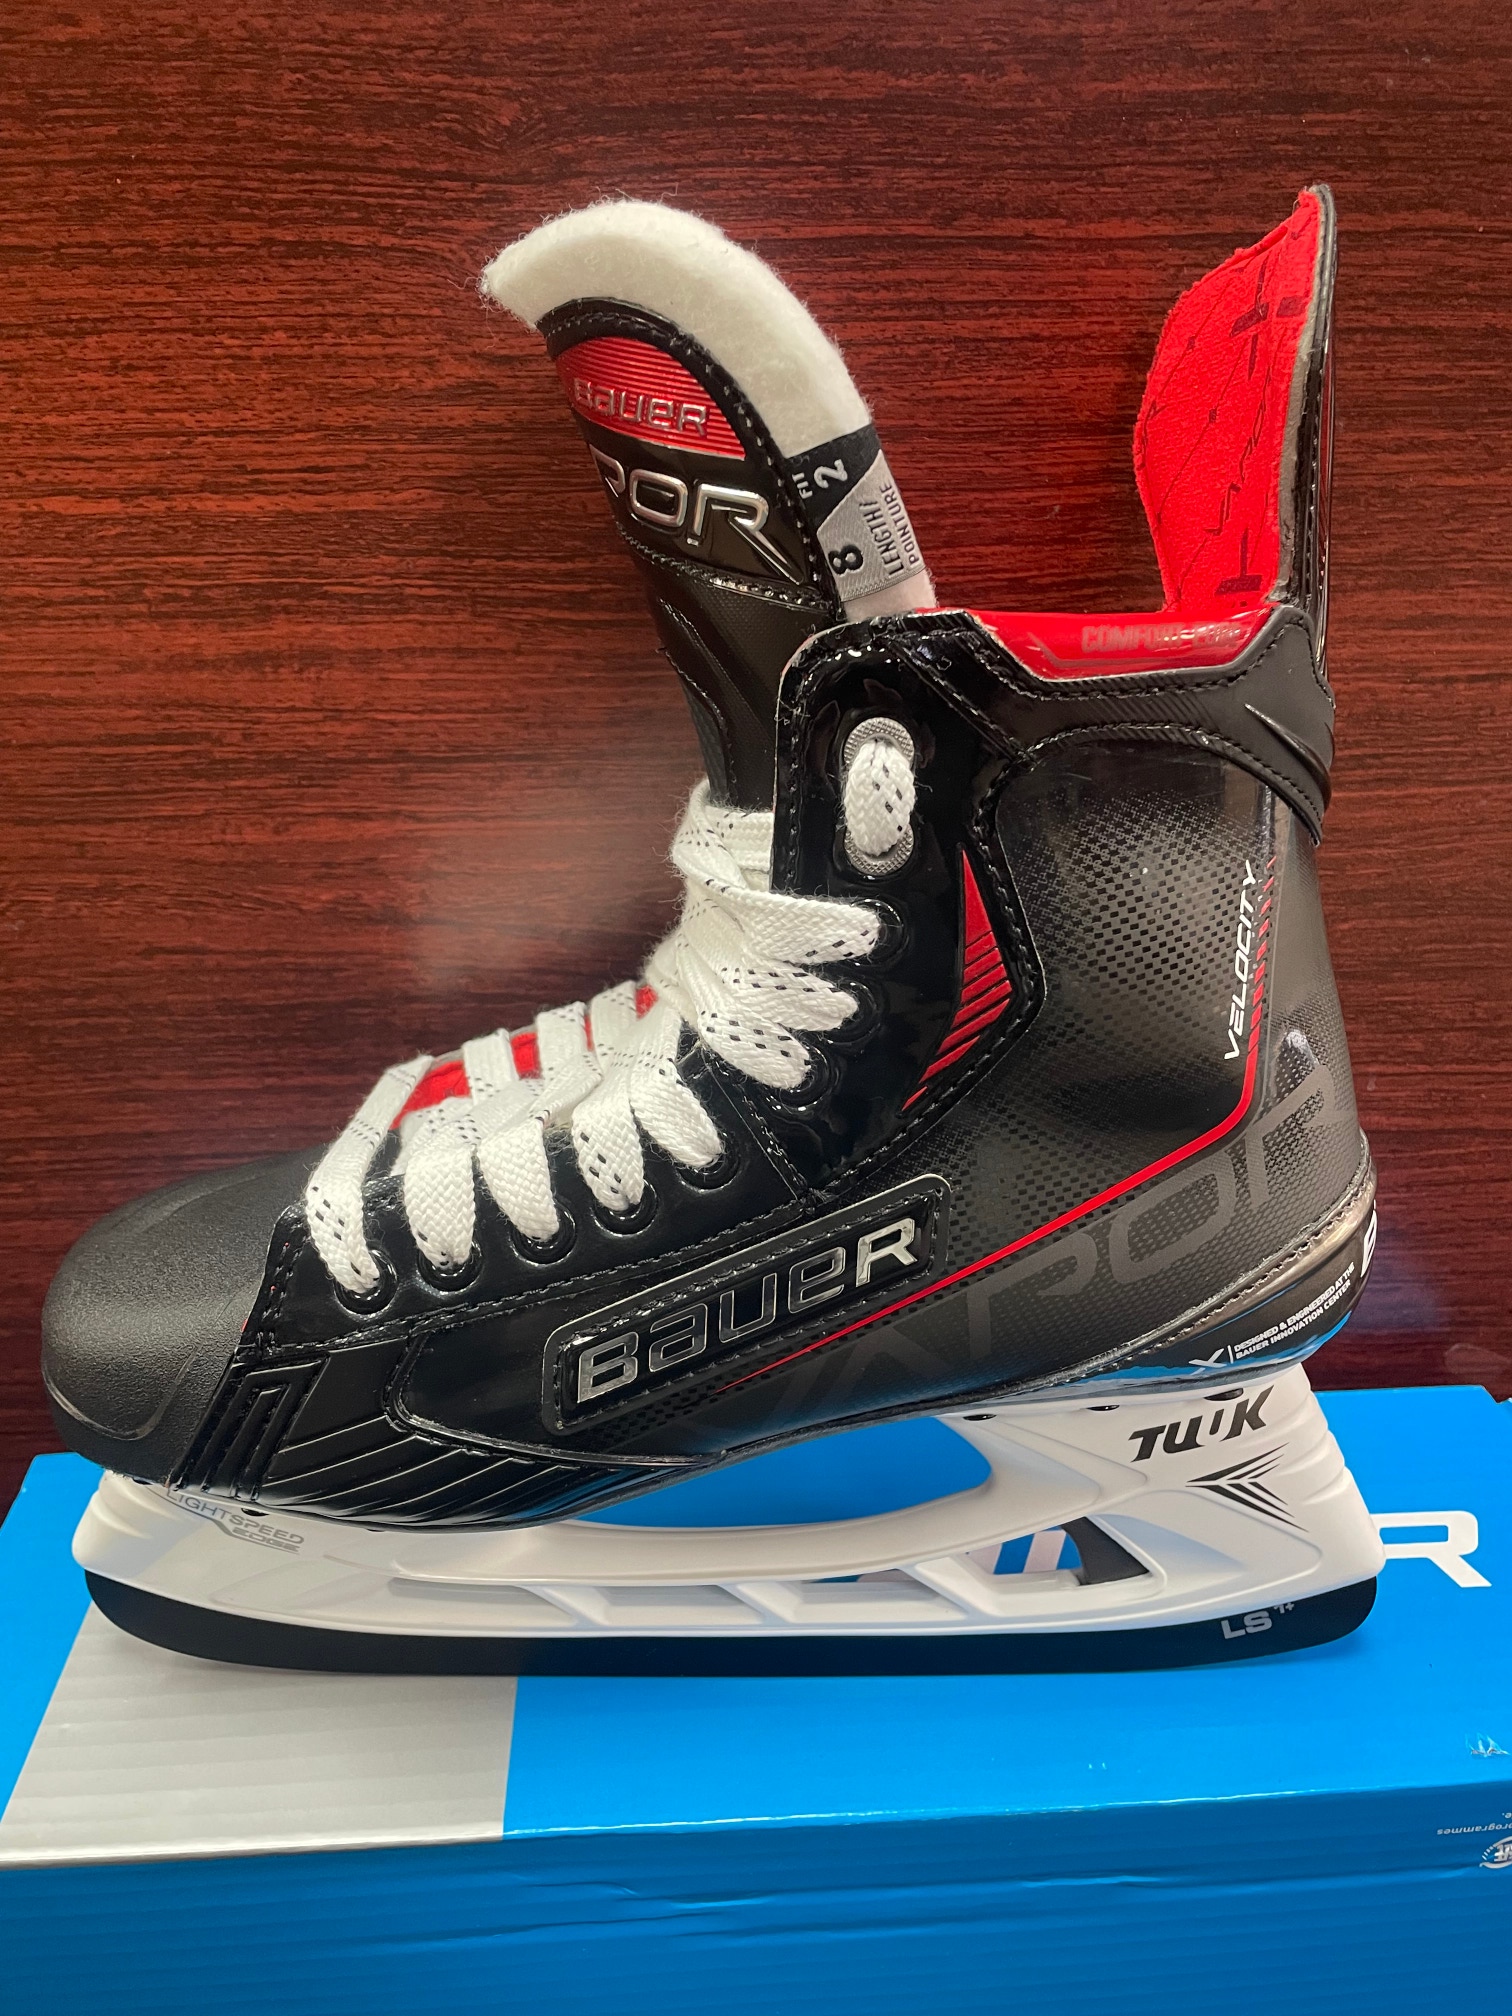 Senior New Bauer Vapor X Velocity Hockey Skates Size 9 Fit 2